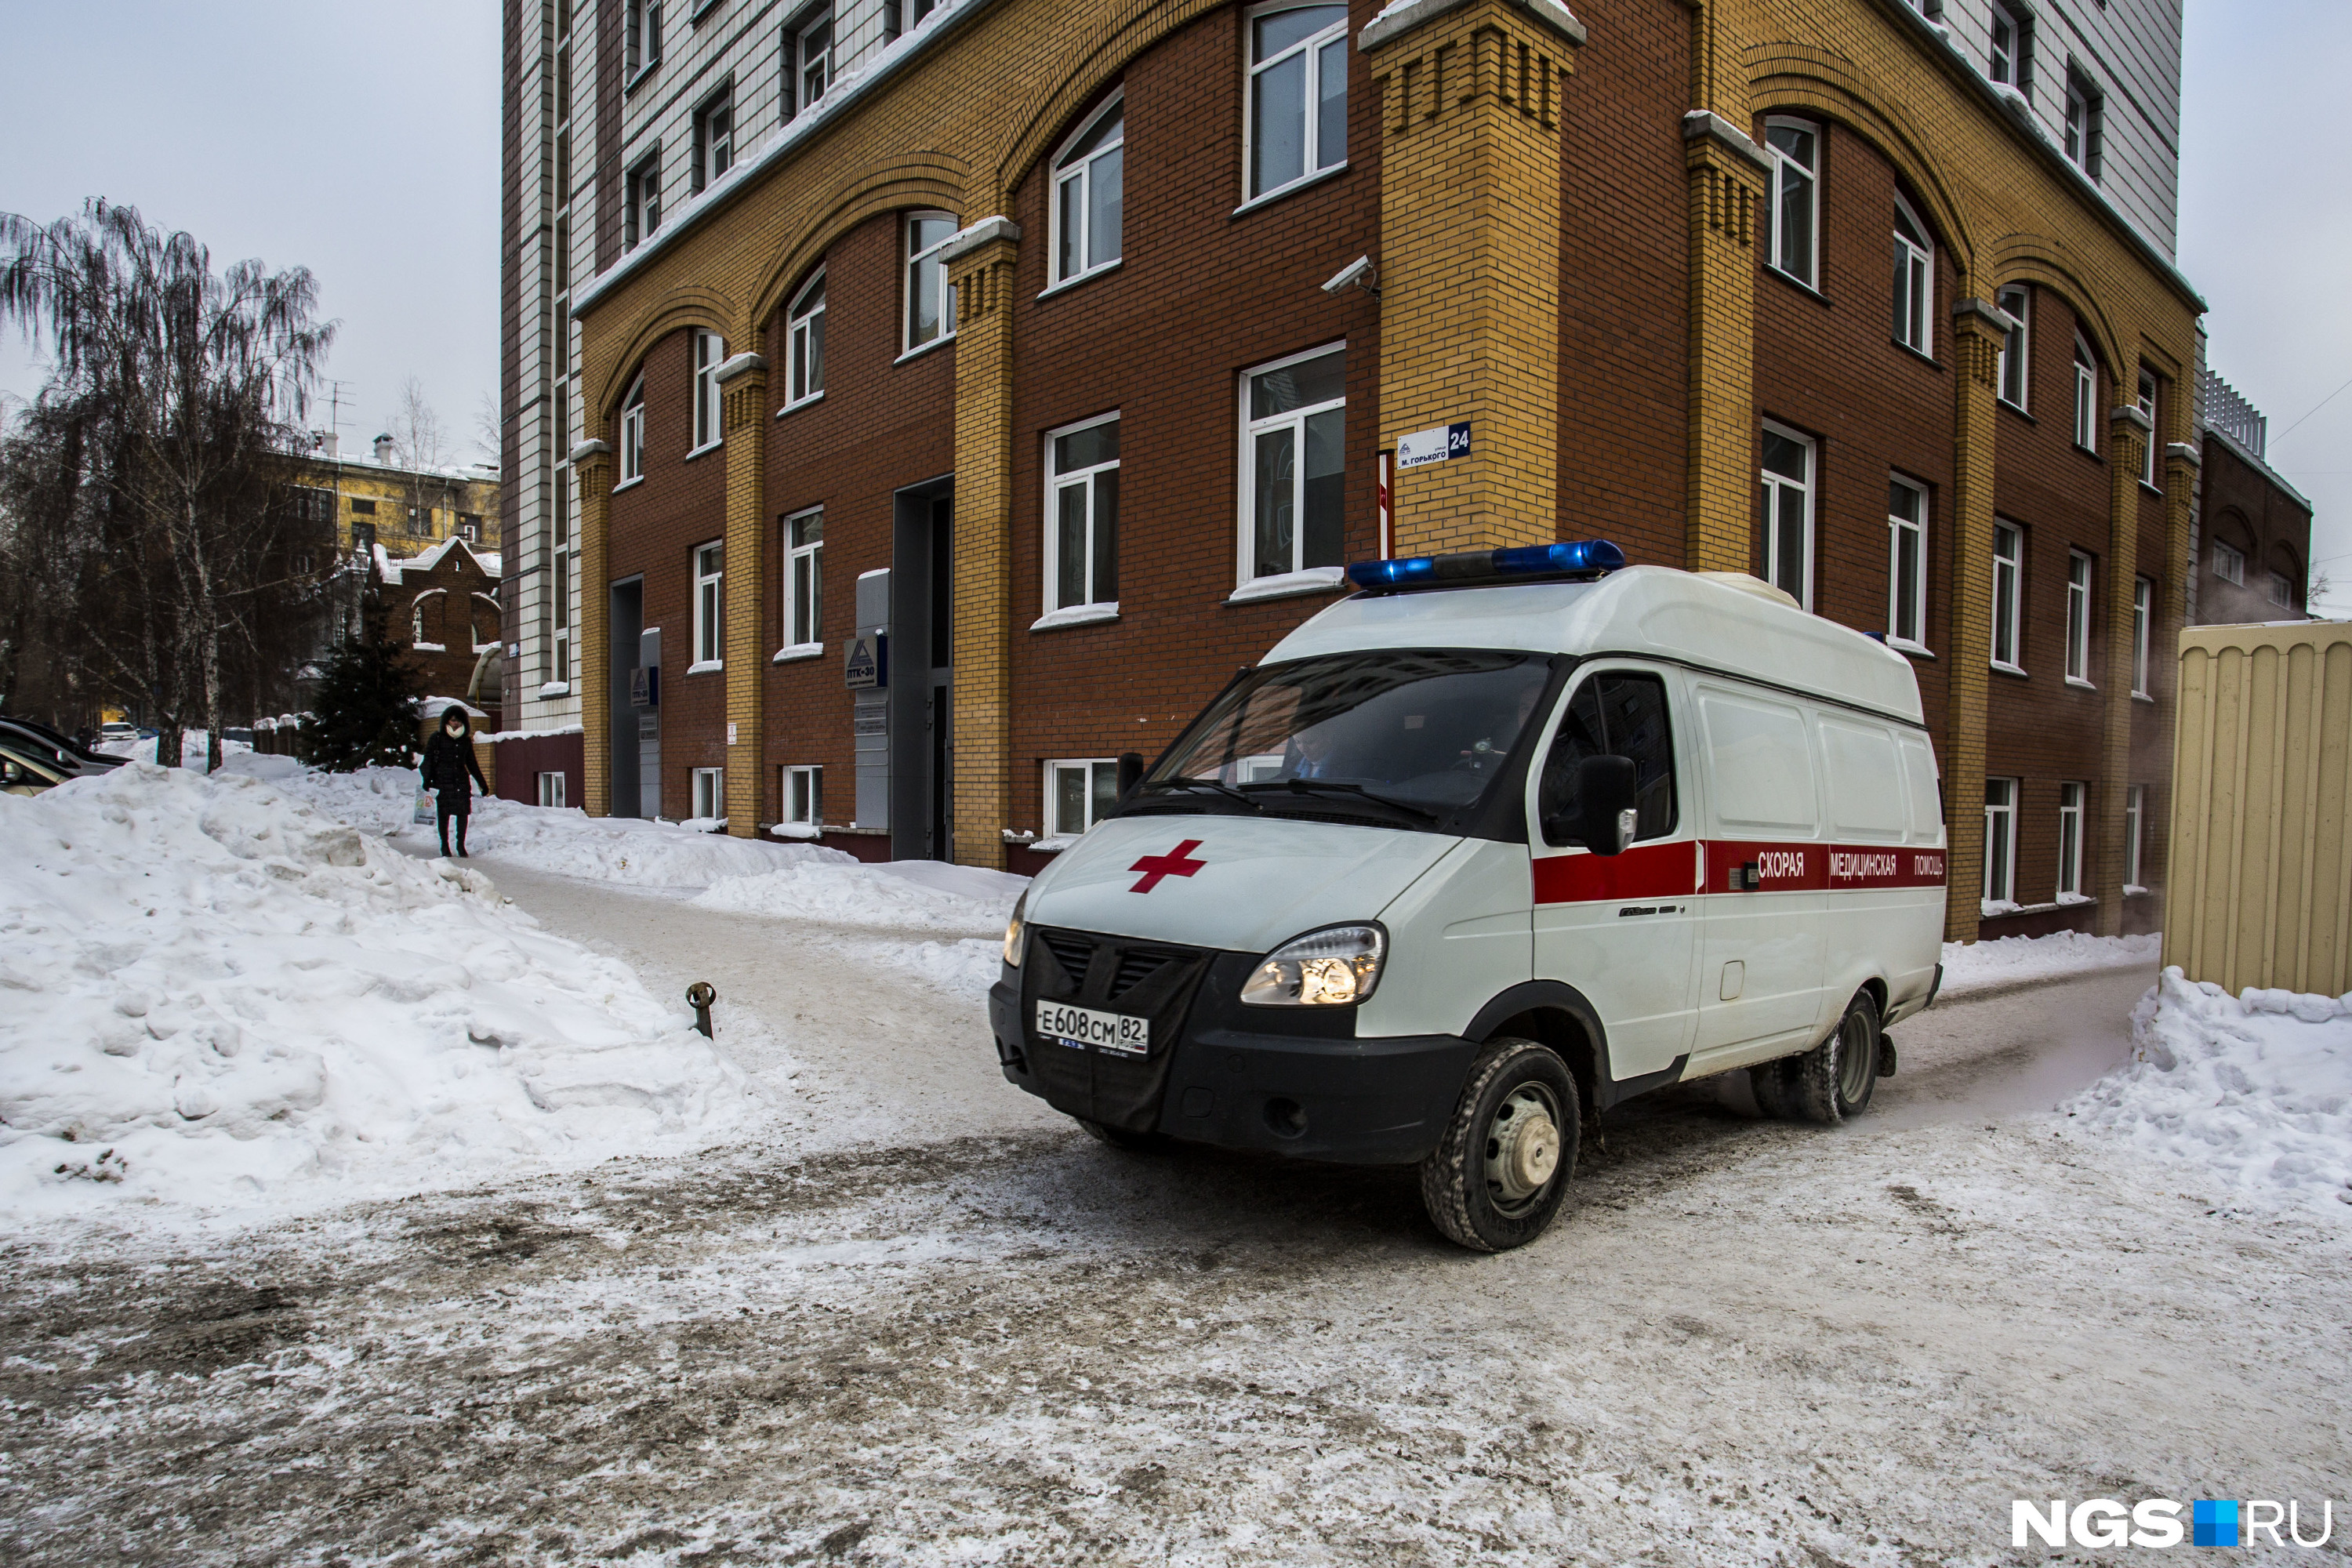 Сибирячку увезли из полиции на скорой: перед этим она попала в потасовку в управляющей компании